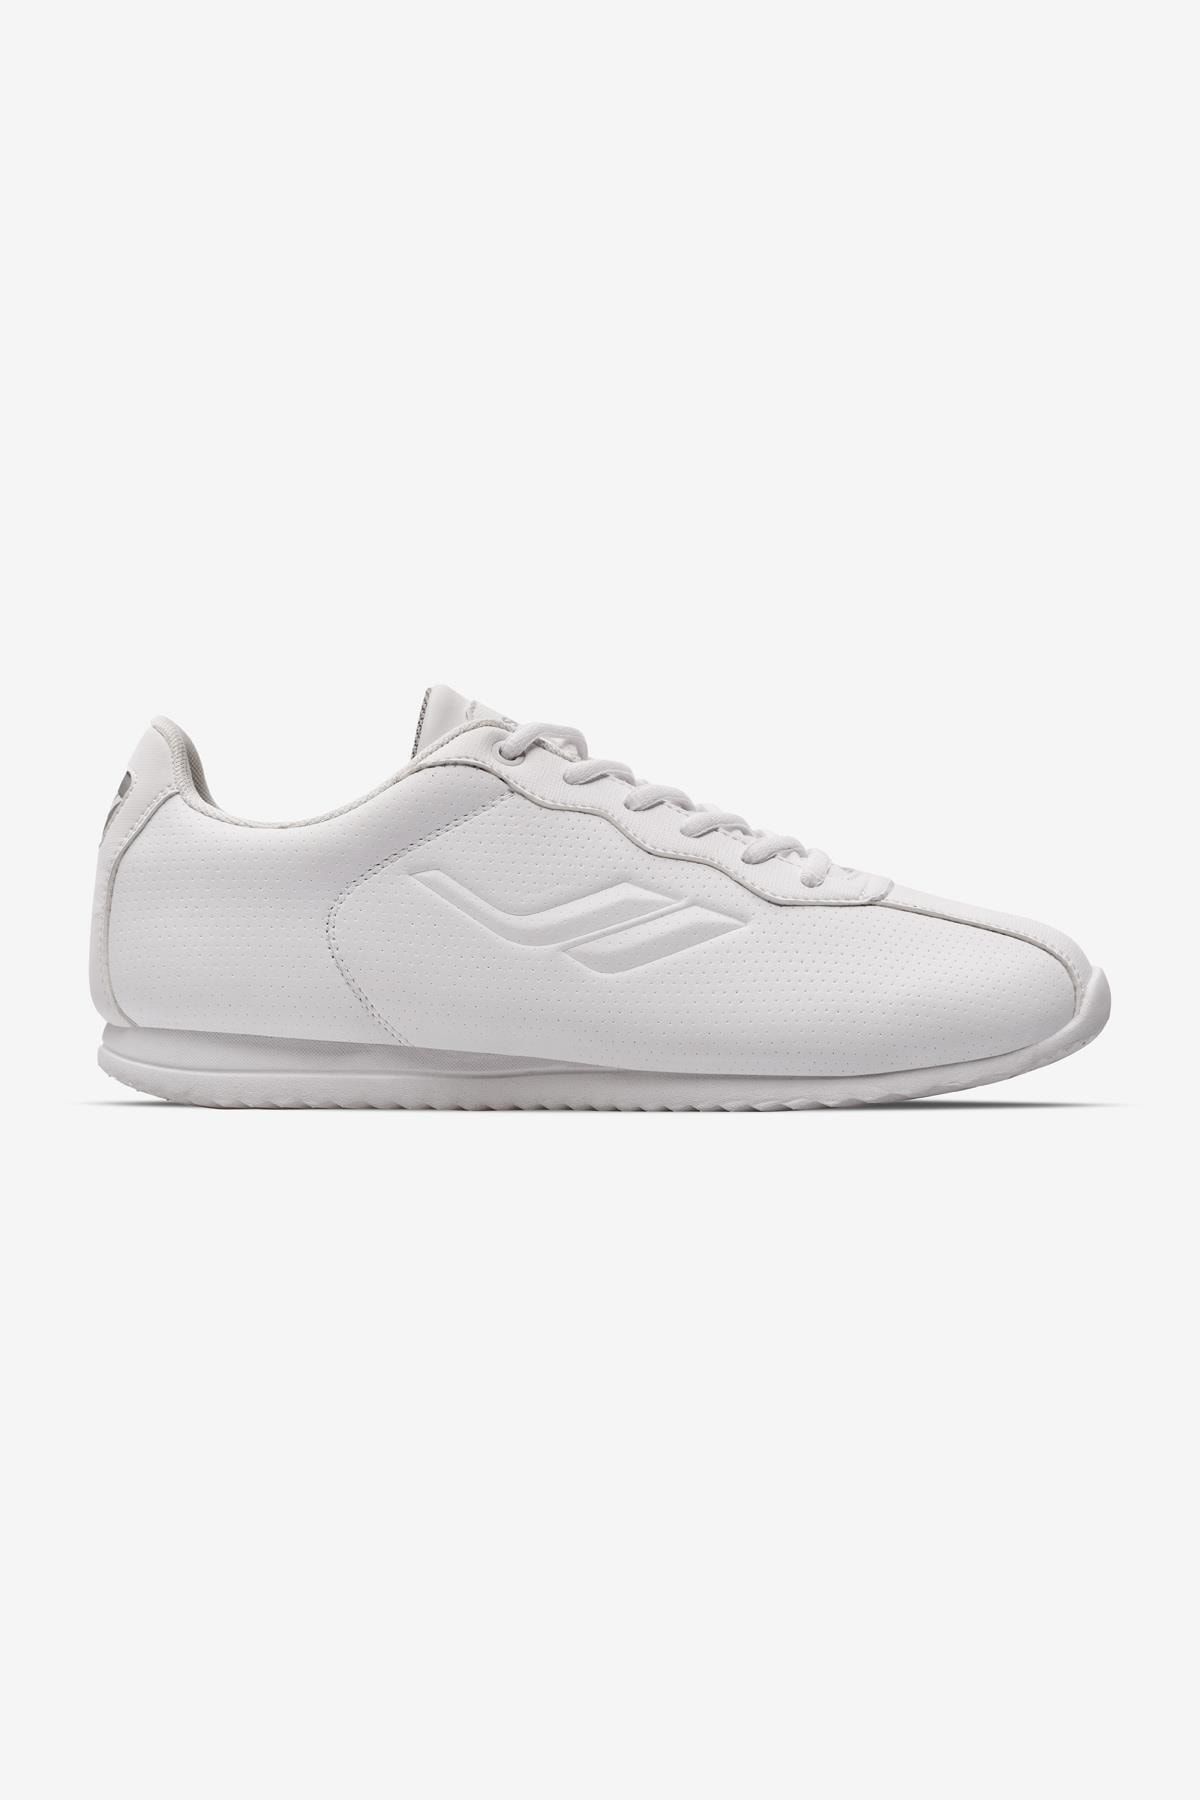 Lescon Neptun Beyaz Sneakers Spor Ayakkabı